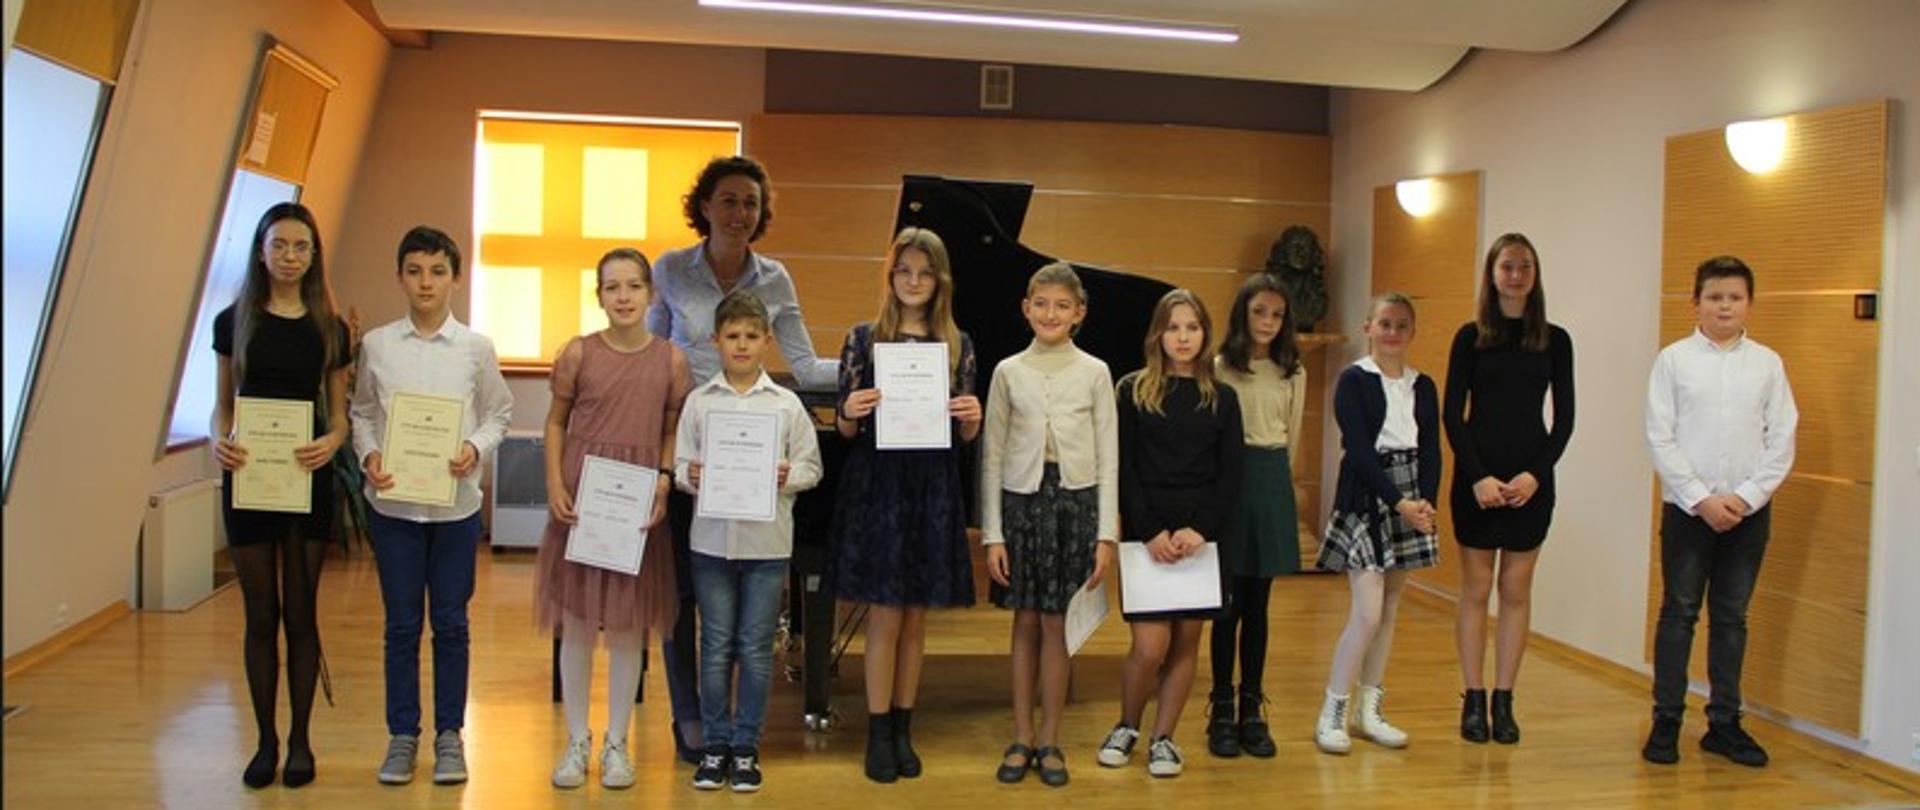 Zdjęcie przedstawia stojące na scenie dzieci, uczestników konkursu pianistycznego wraz z panią wicedyrektor.